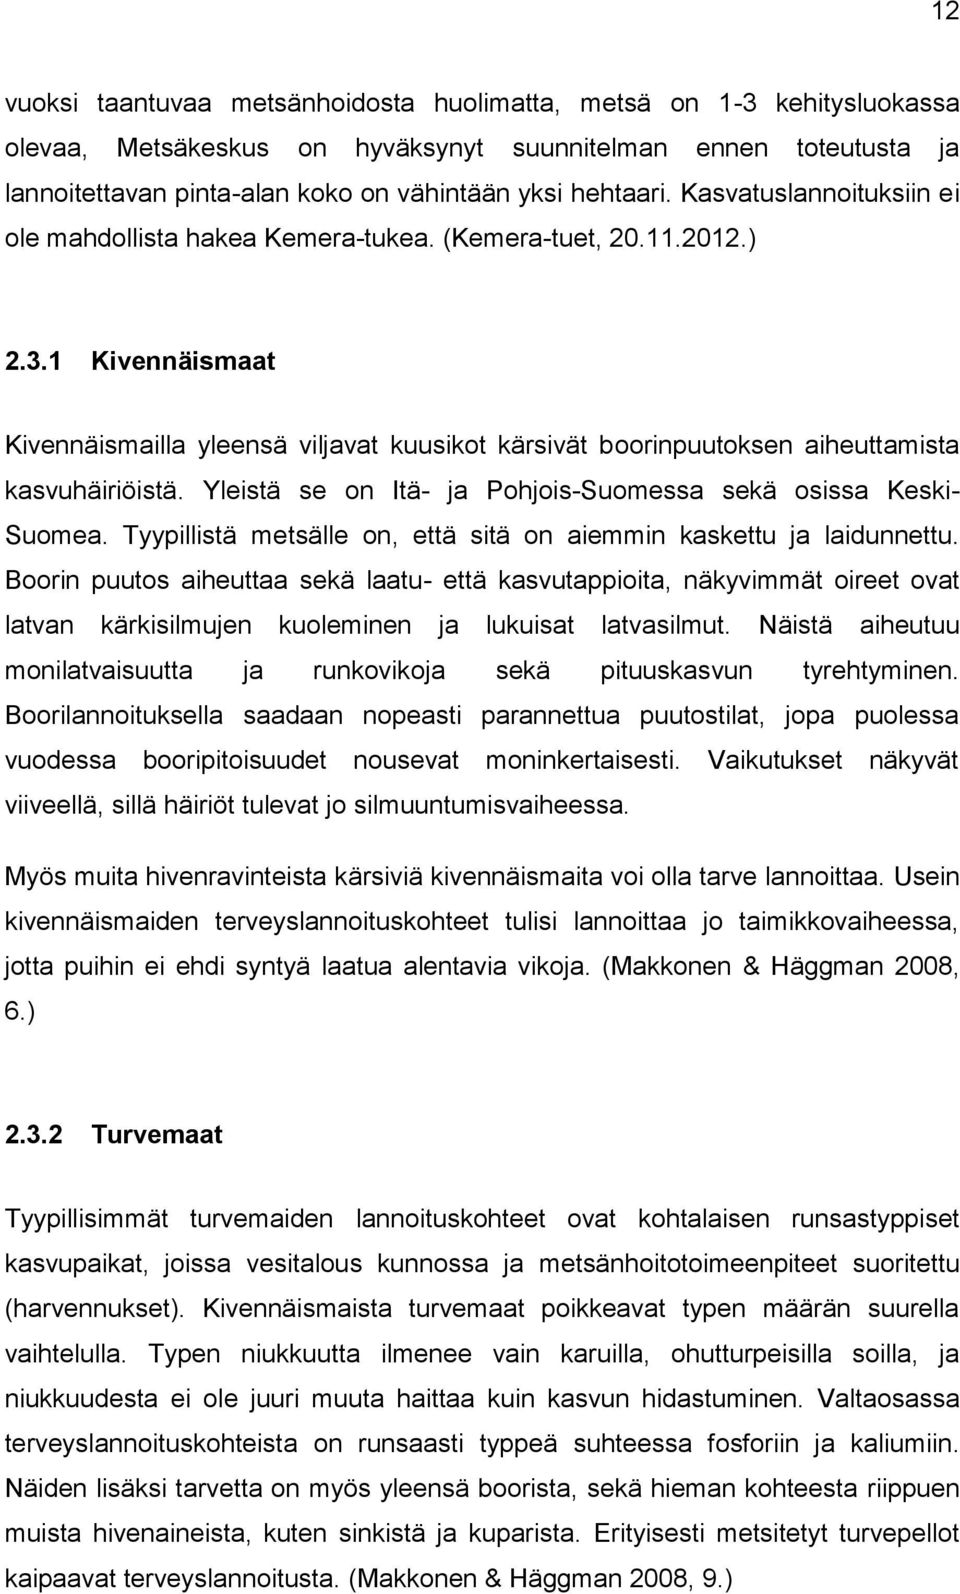 1 Kivennäismaat Kivennäismailla yleensä viljavat kuusikot kärsivät boorinpuutoksen aiheuttamista kasvuhäiriöistä. Yleistä se on Itä- ja Pohjois-Suomessa sekä osissa Keski- Suomea.